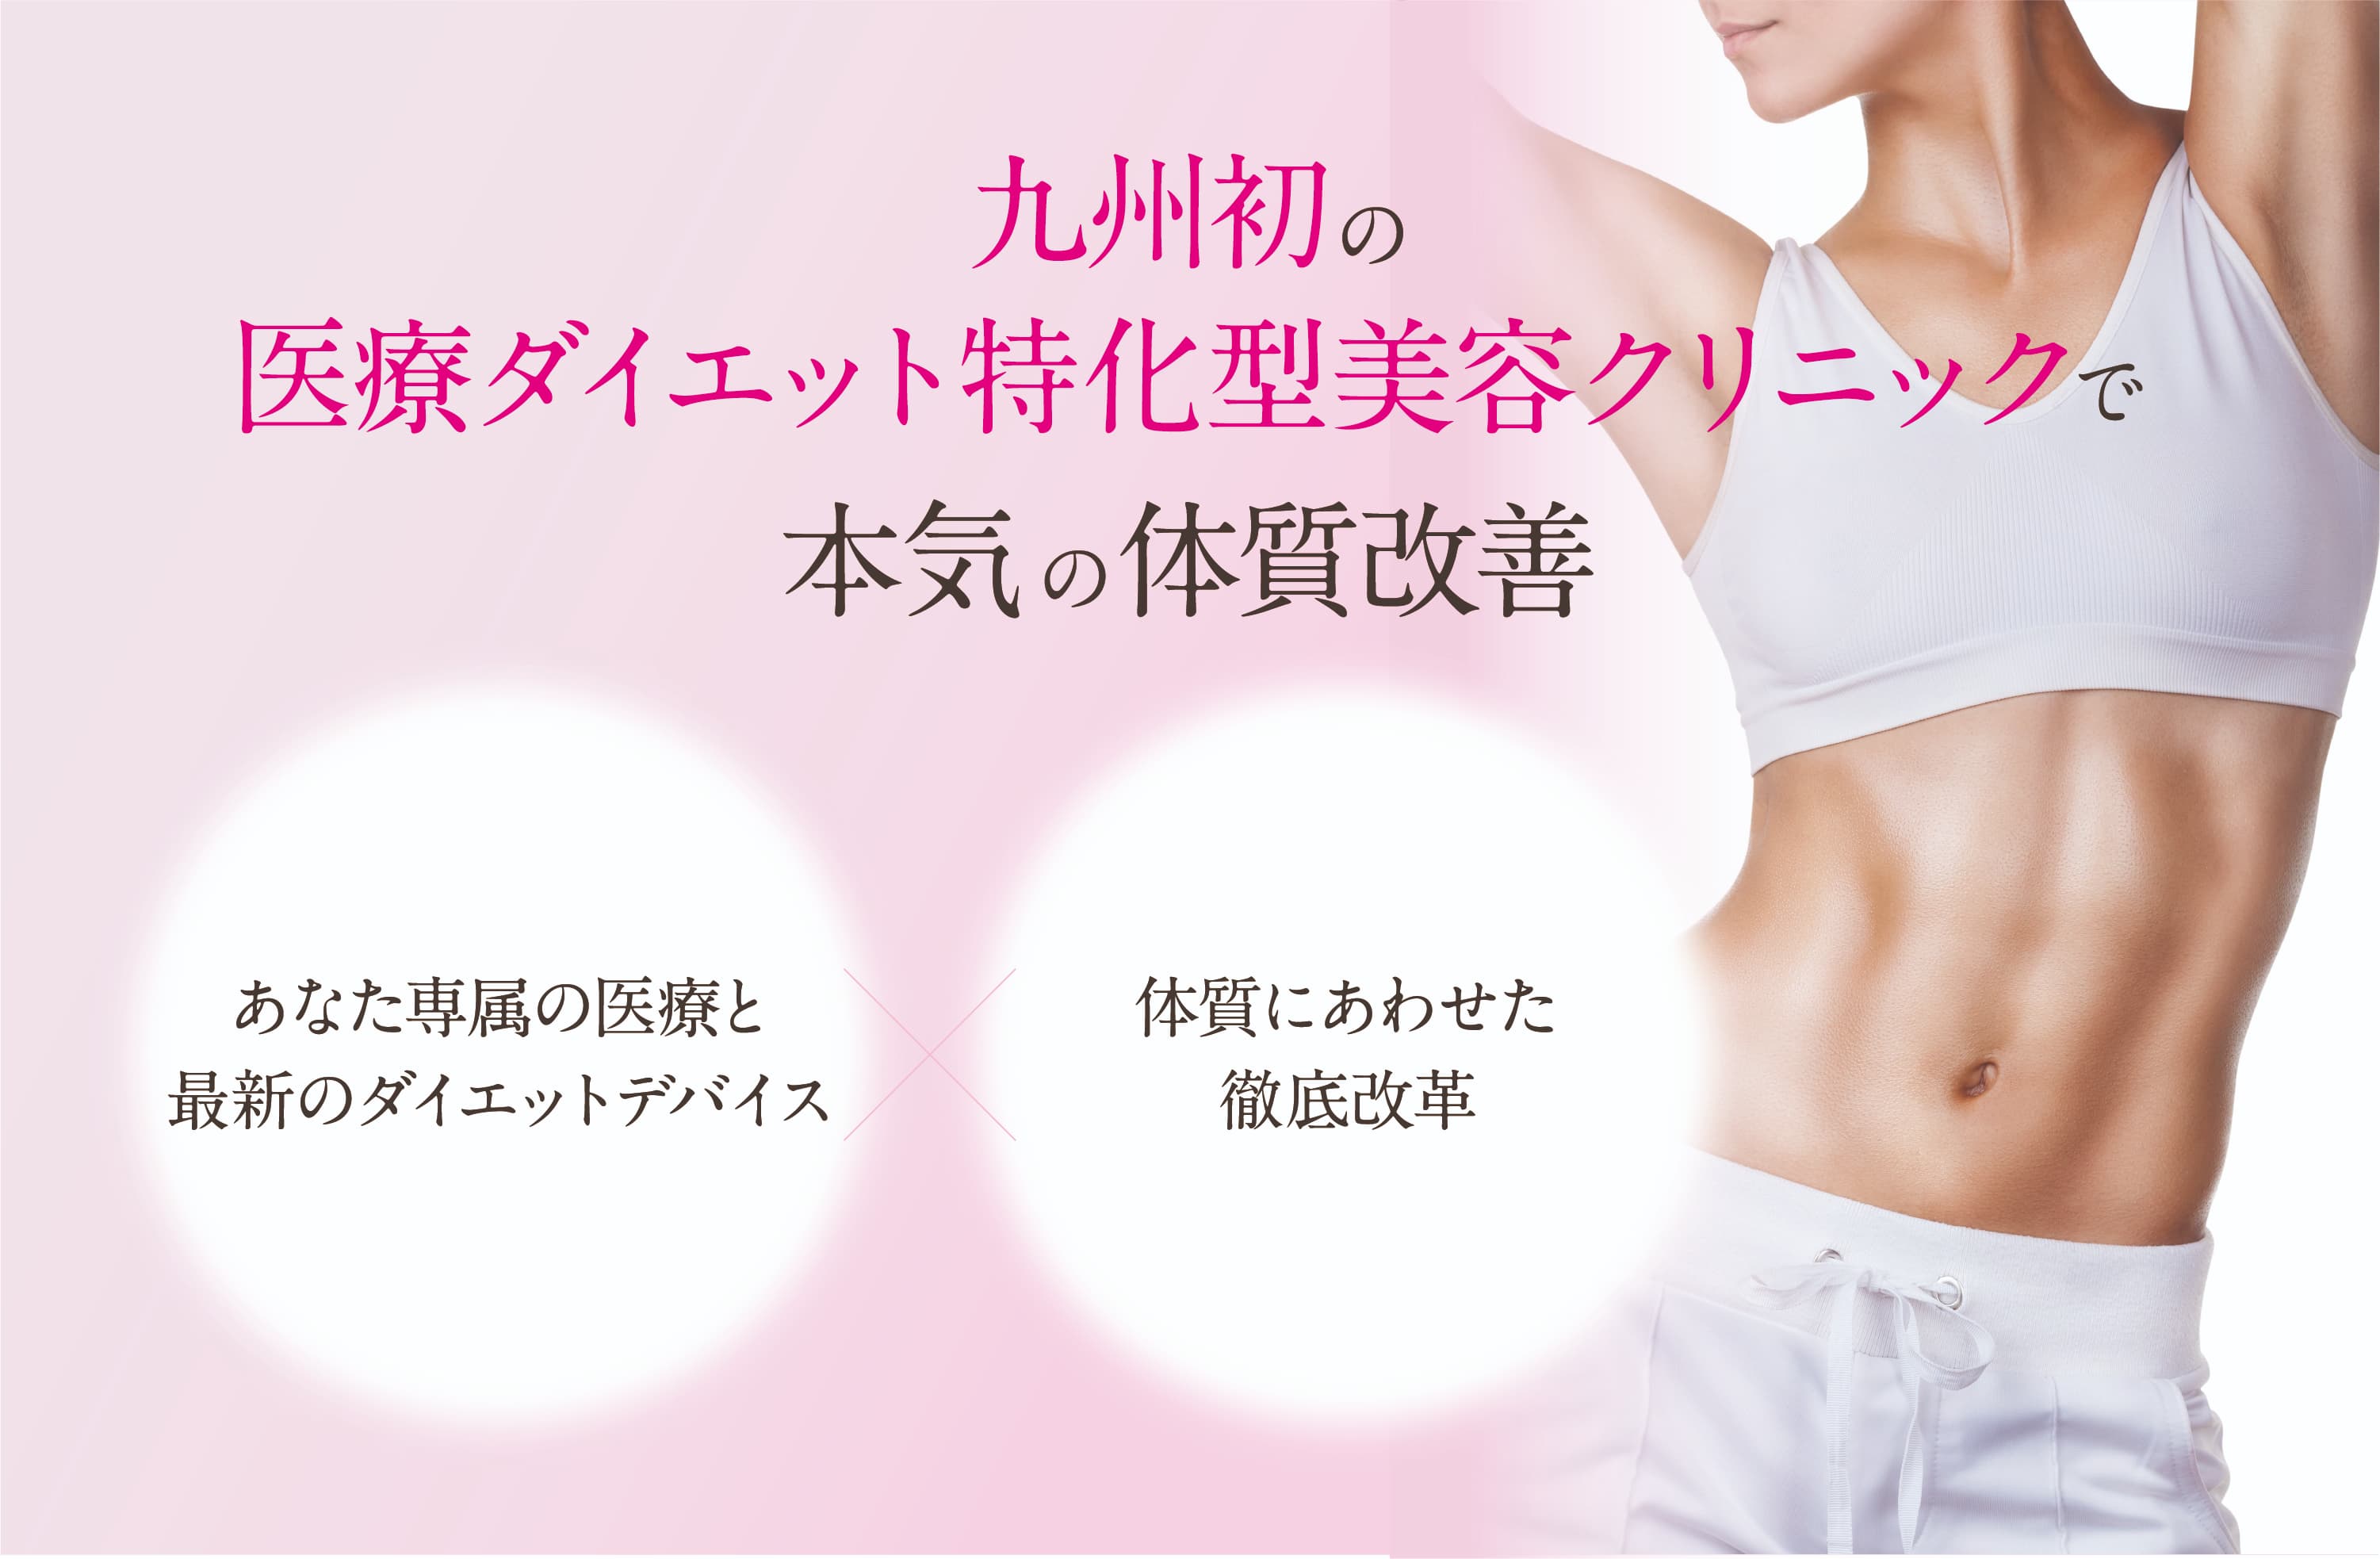 九州初の医療ダイエット特化型美容クリニックで本気の体質改善